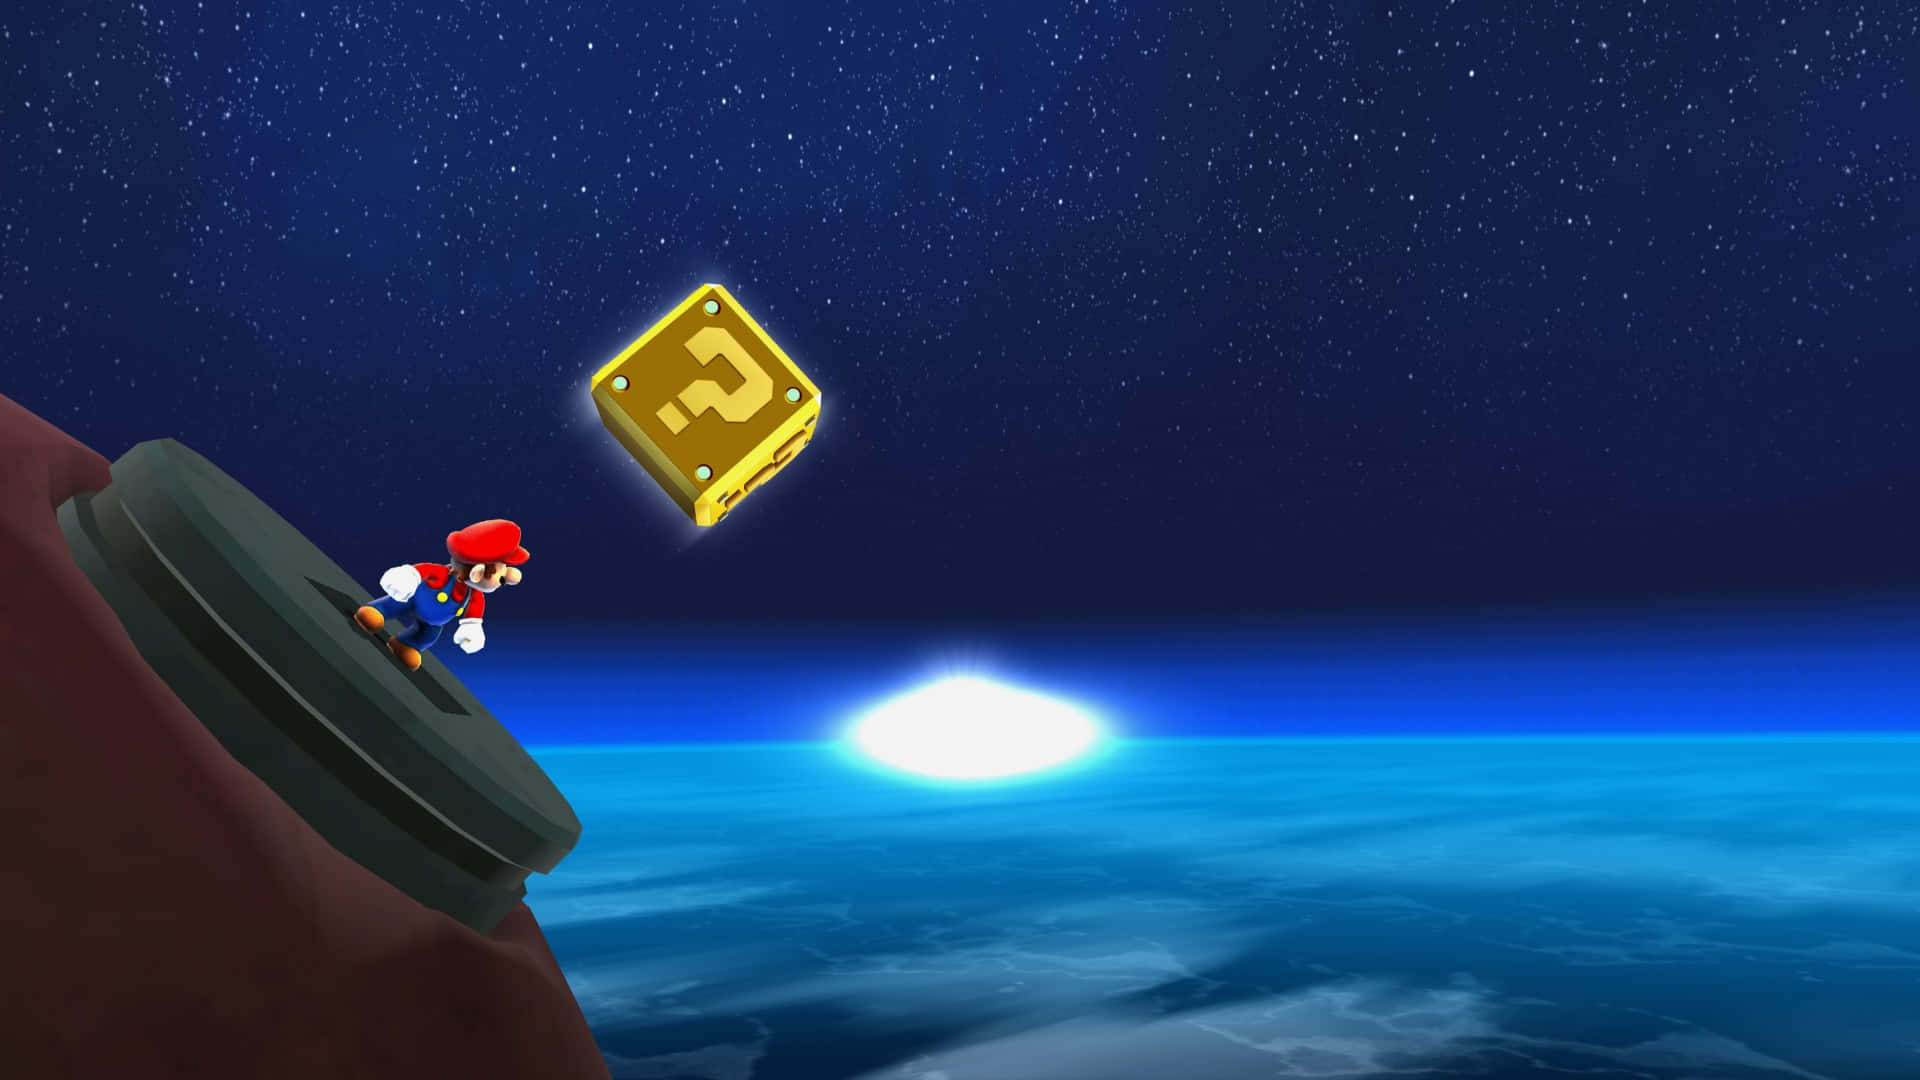 Super Mario explores a new galaxy Wallpaper